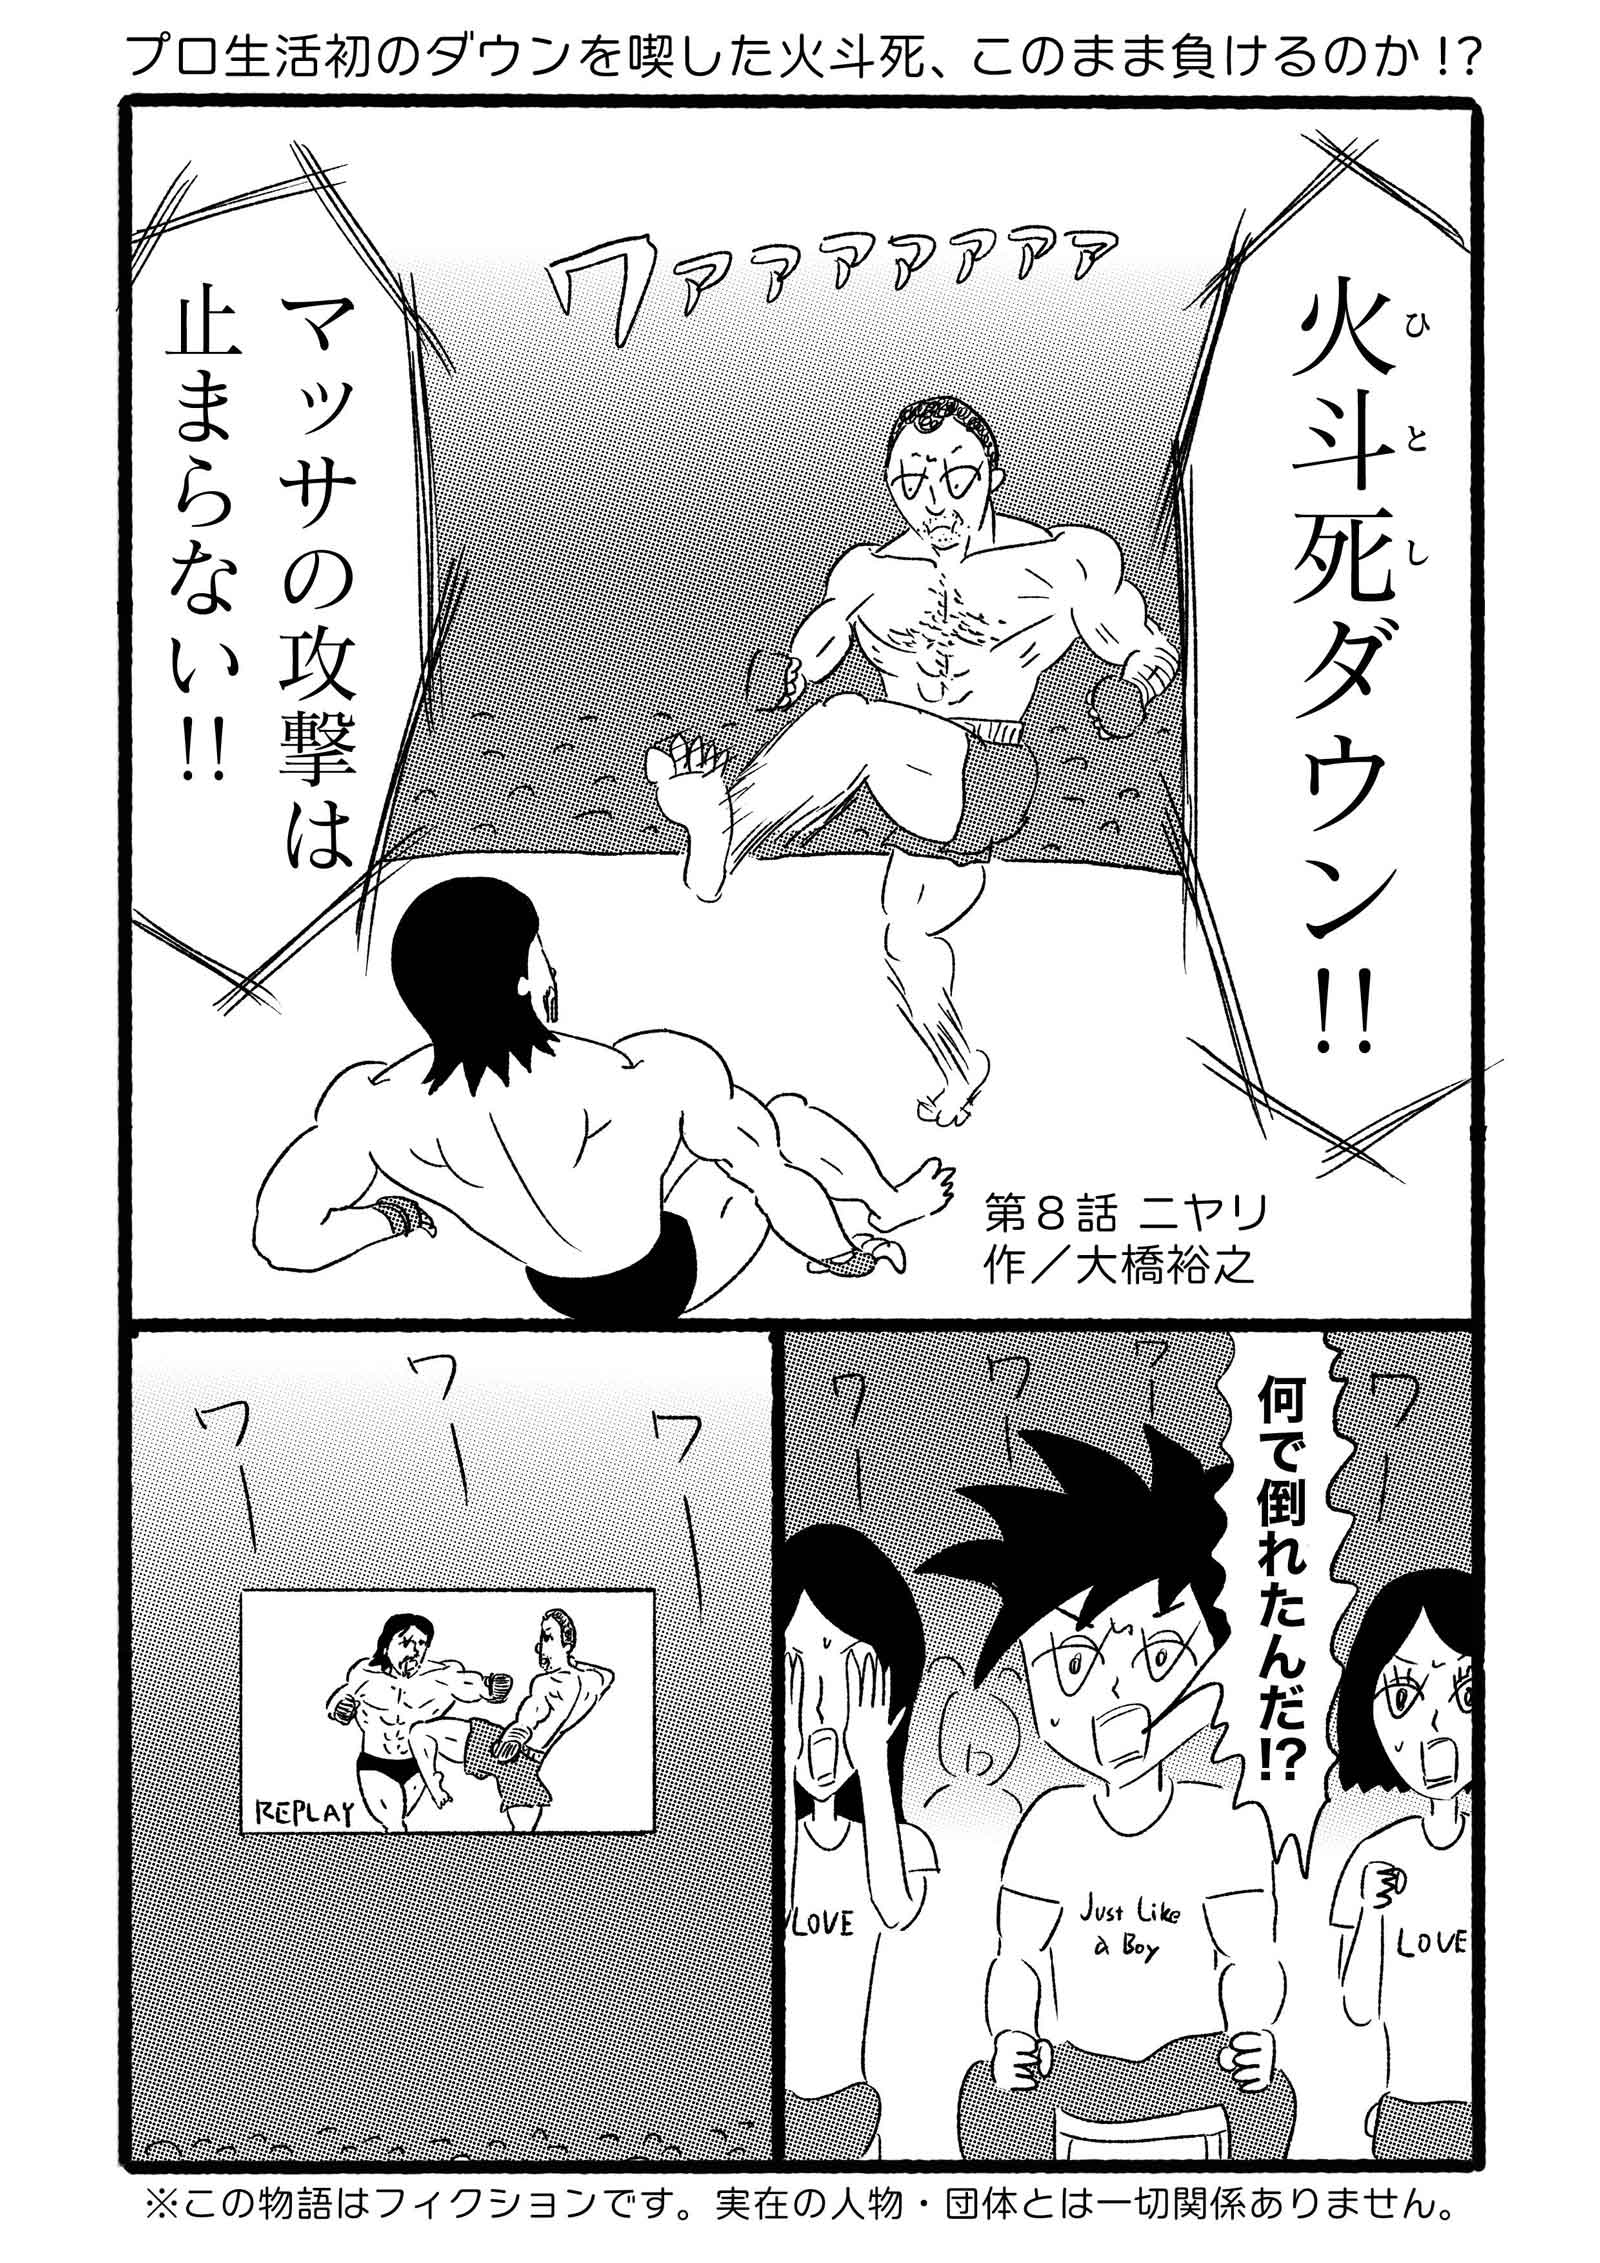 TarzanWeb/ターザンウェブ連載漫画「ジャンプ少年ヒトシ」第8話ニヤリ（作・大橋裕之）